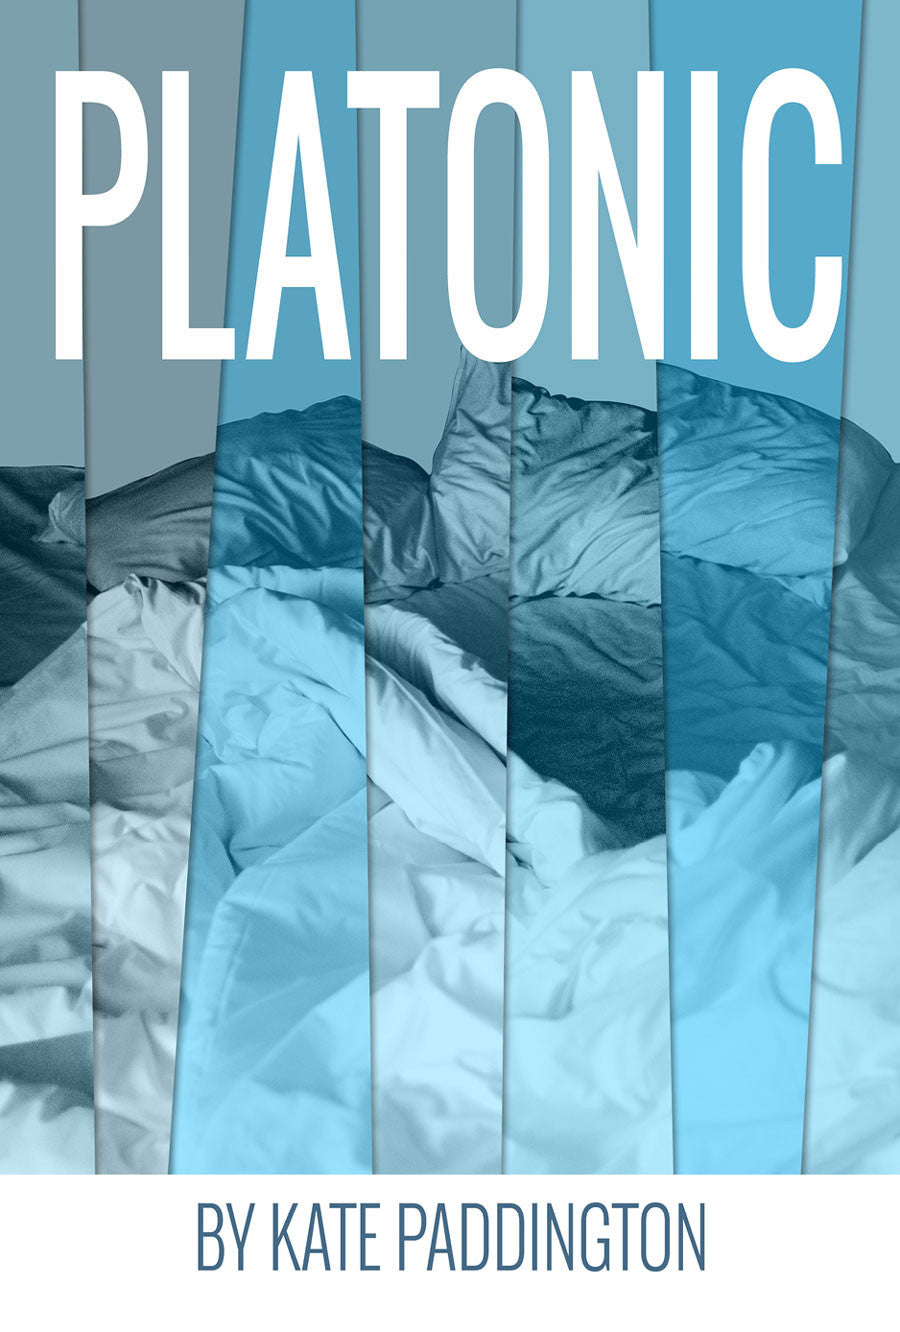 Platonic by Kate Paddington